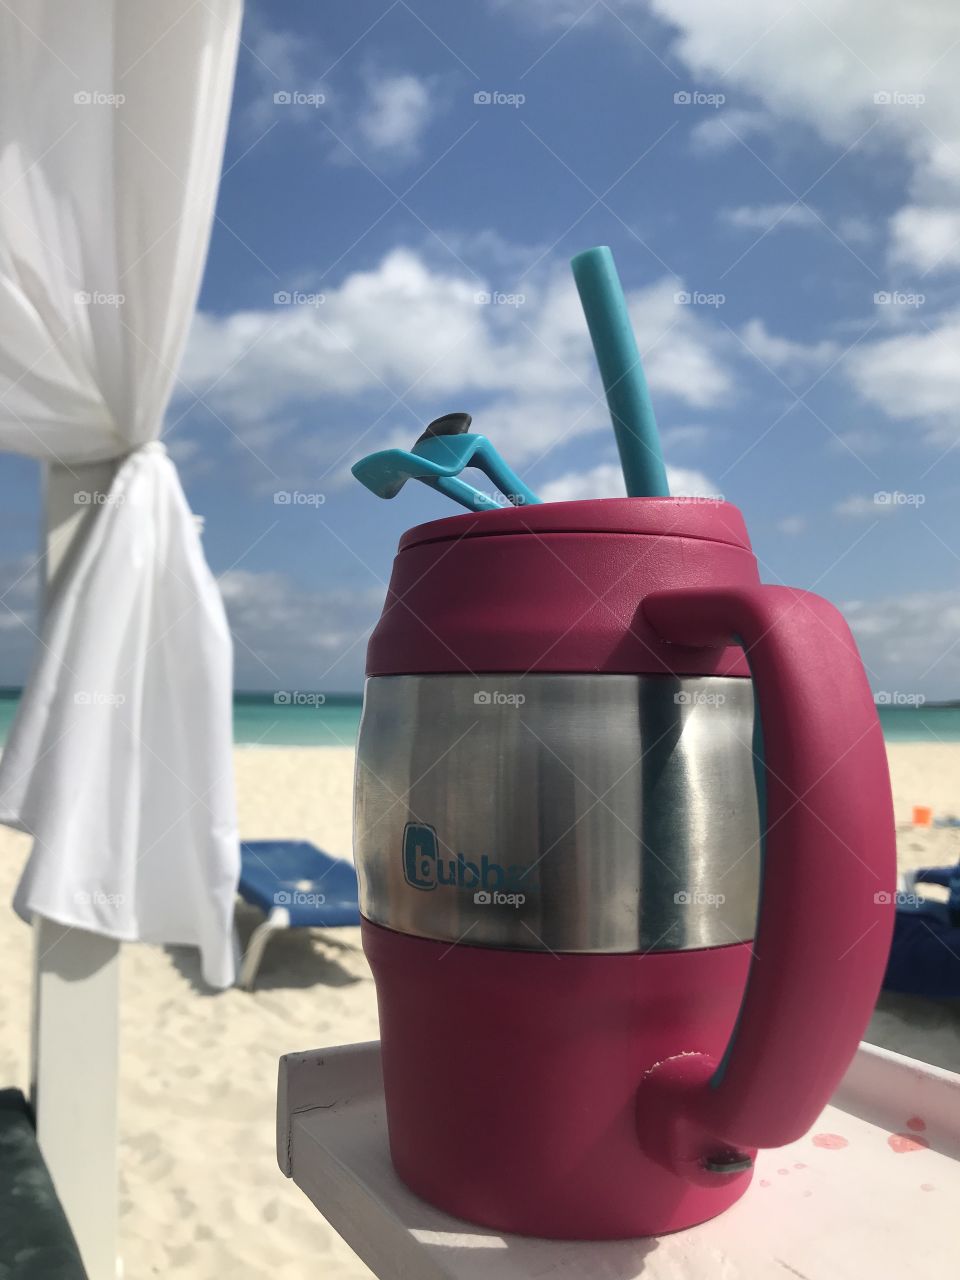 Bubba mug on beach in Cuba